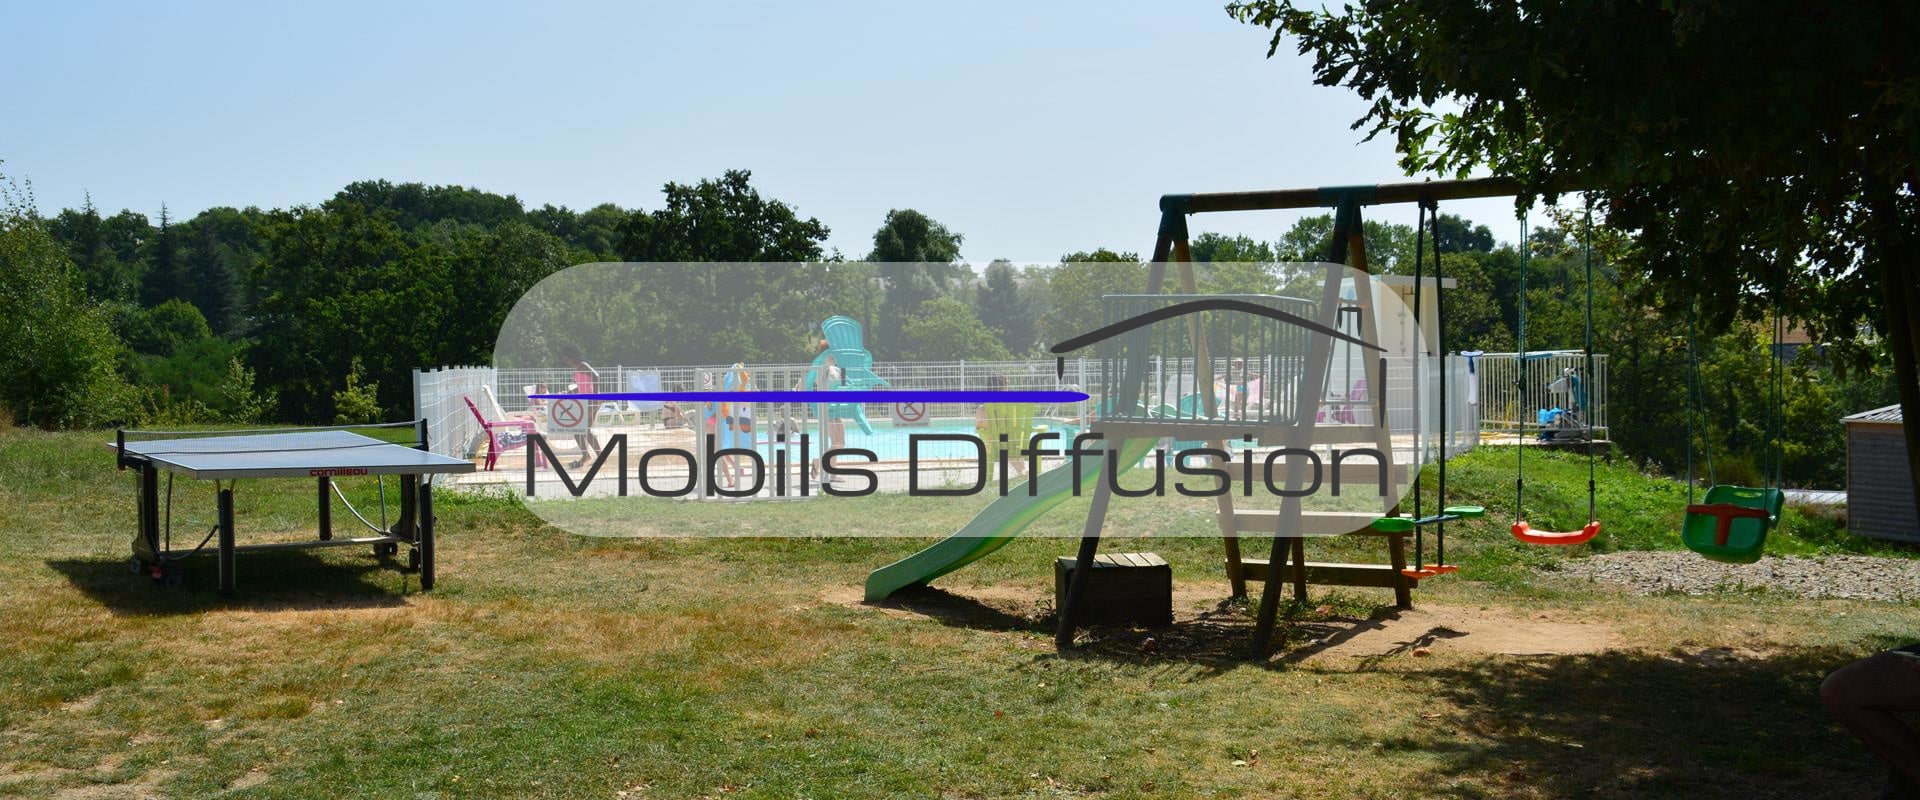 Mobils Diffusion - Vente et achat de mobil-home dans l’Aveyron (12)